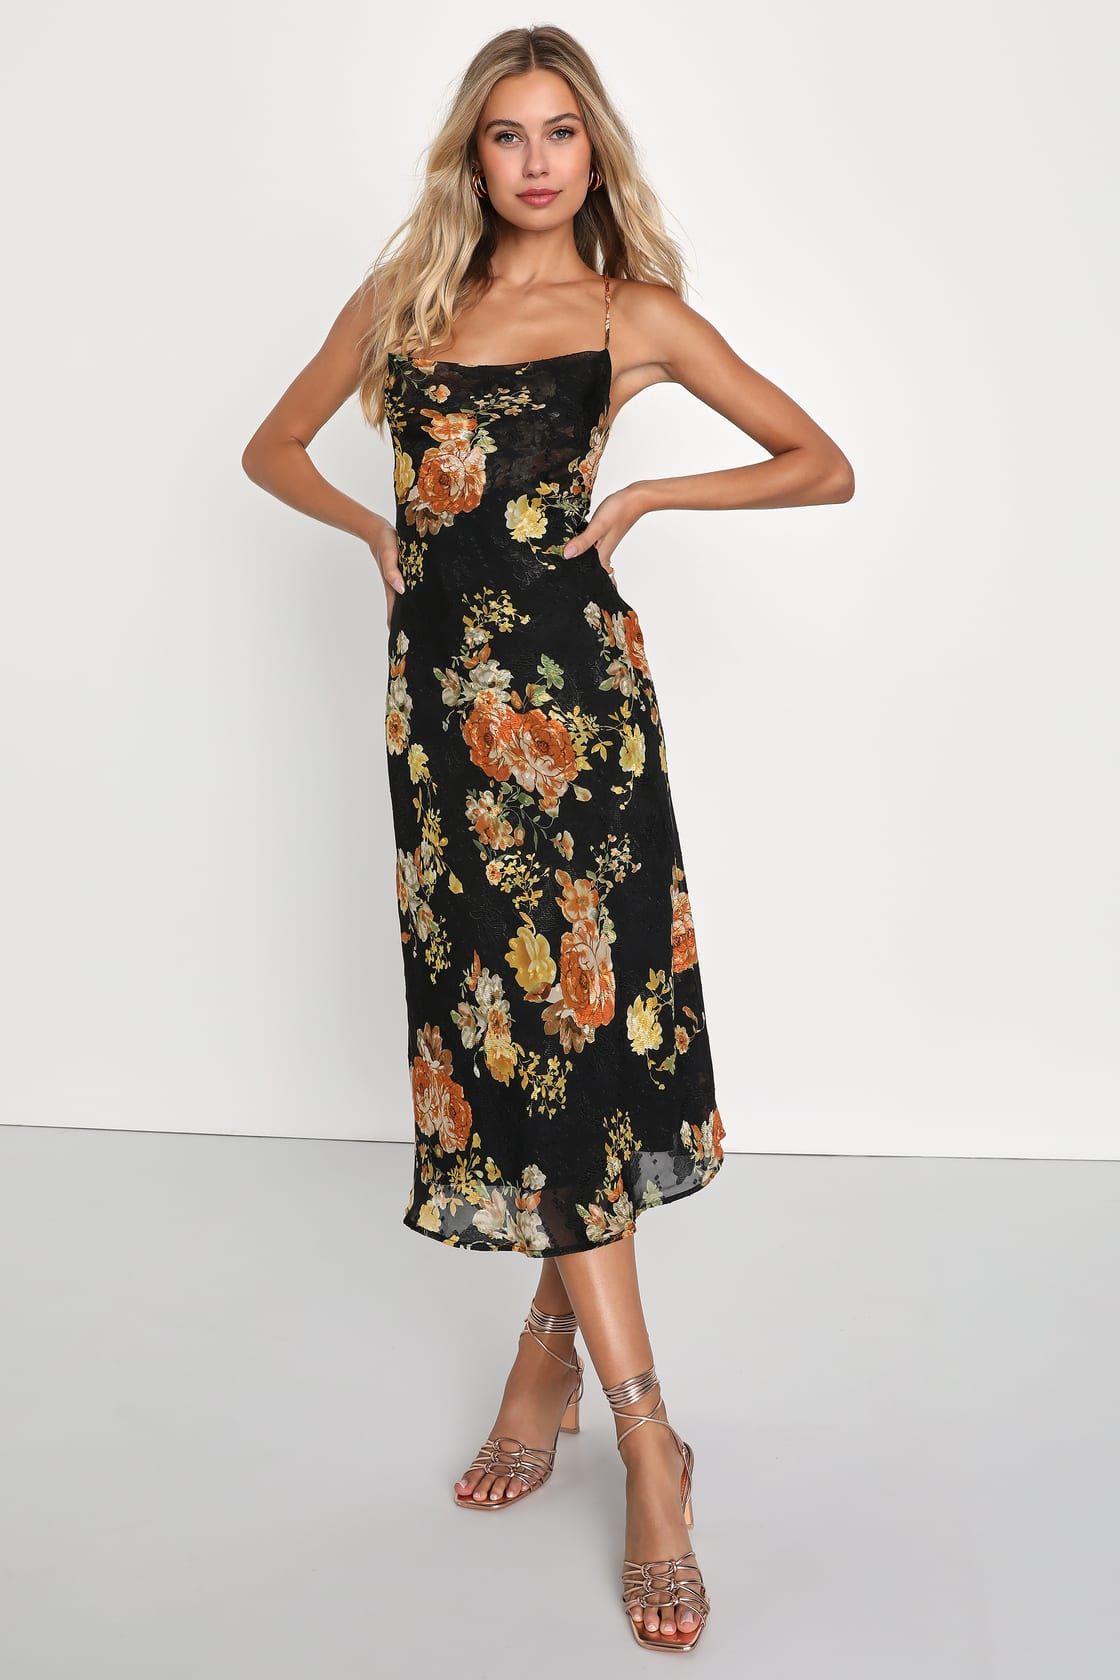 Petal Prowess Black Floral Print Lace-Up Cowl Midi Dress | Lulus (US)